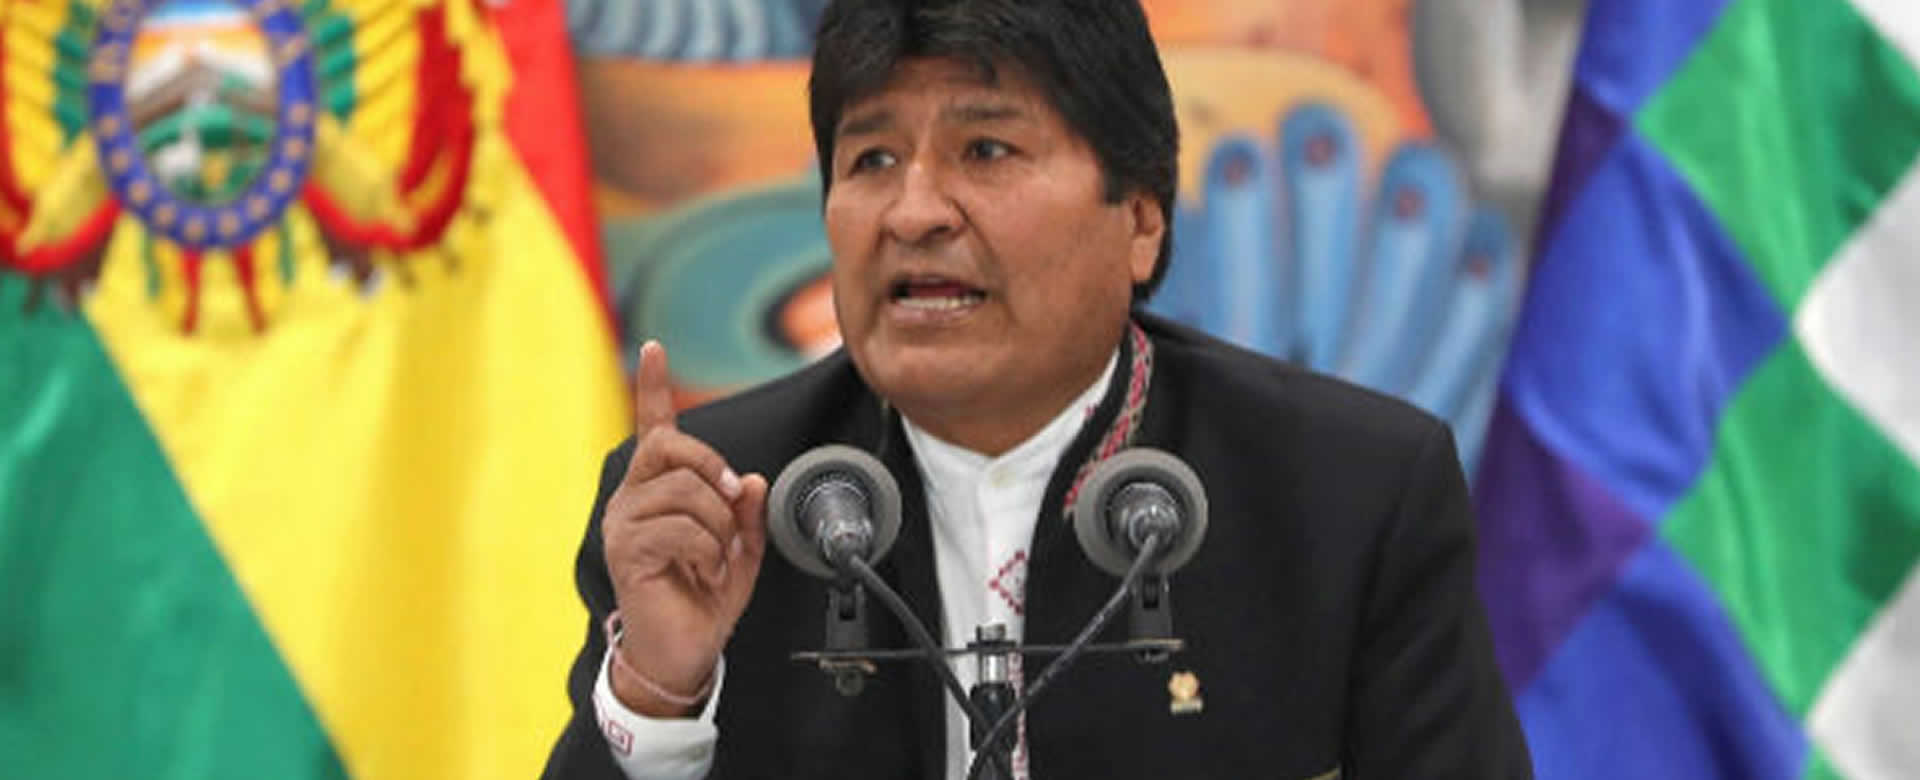 Evo Morales expresó “estaré donde sirva más al pueblo boliviano”